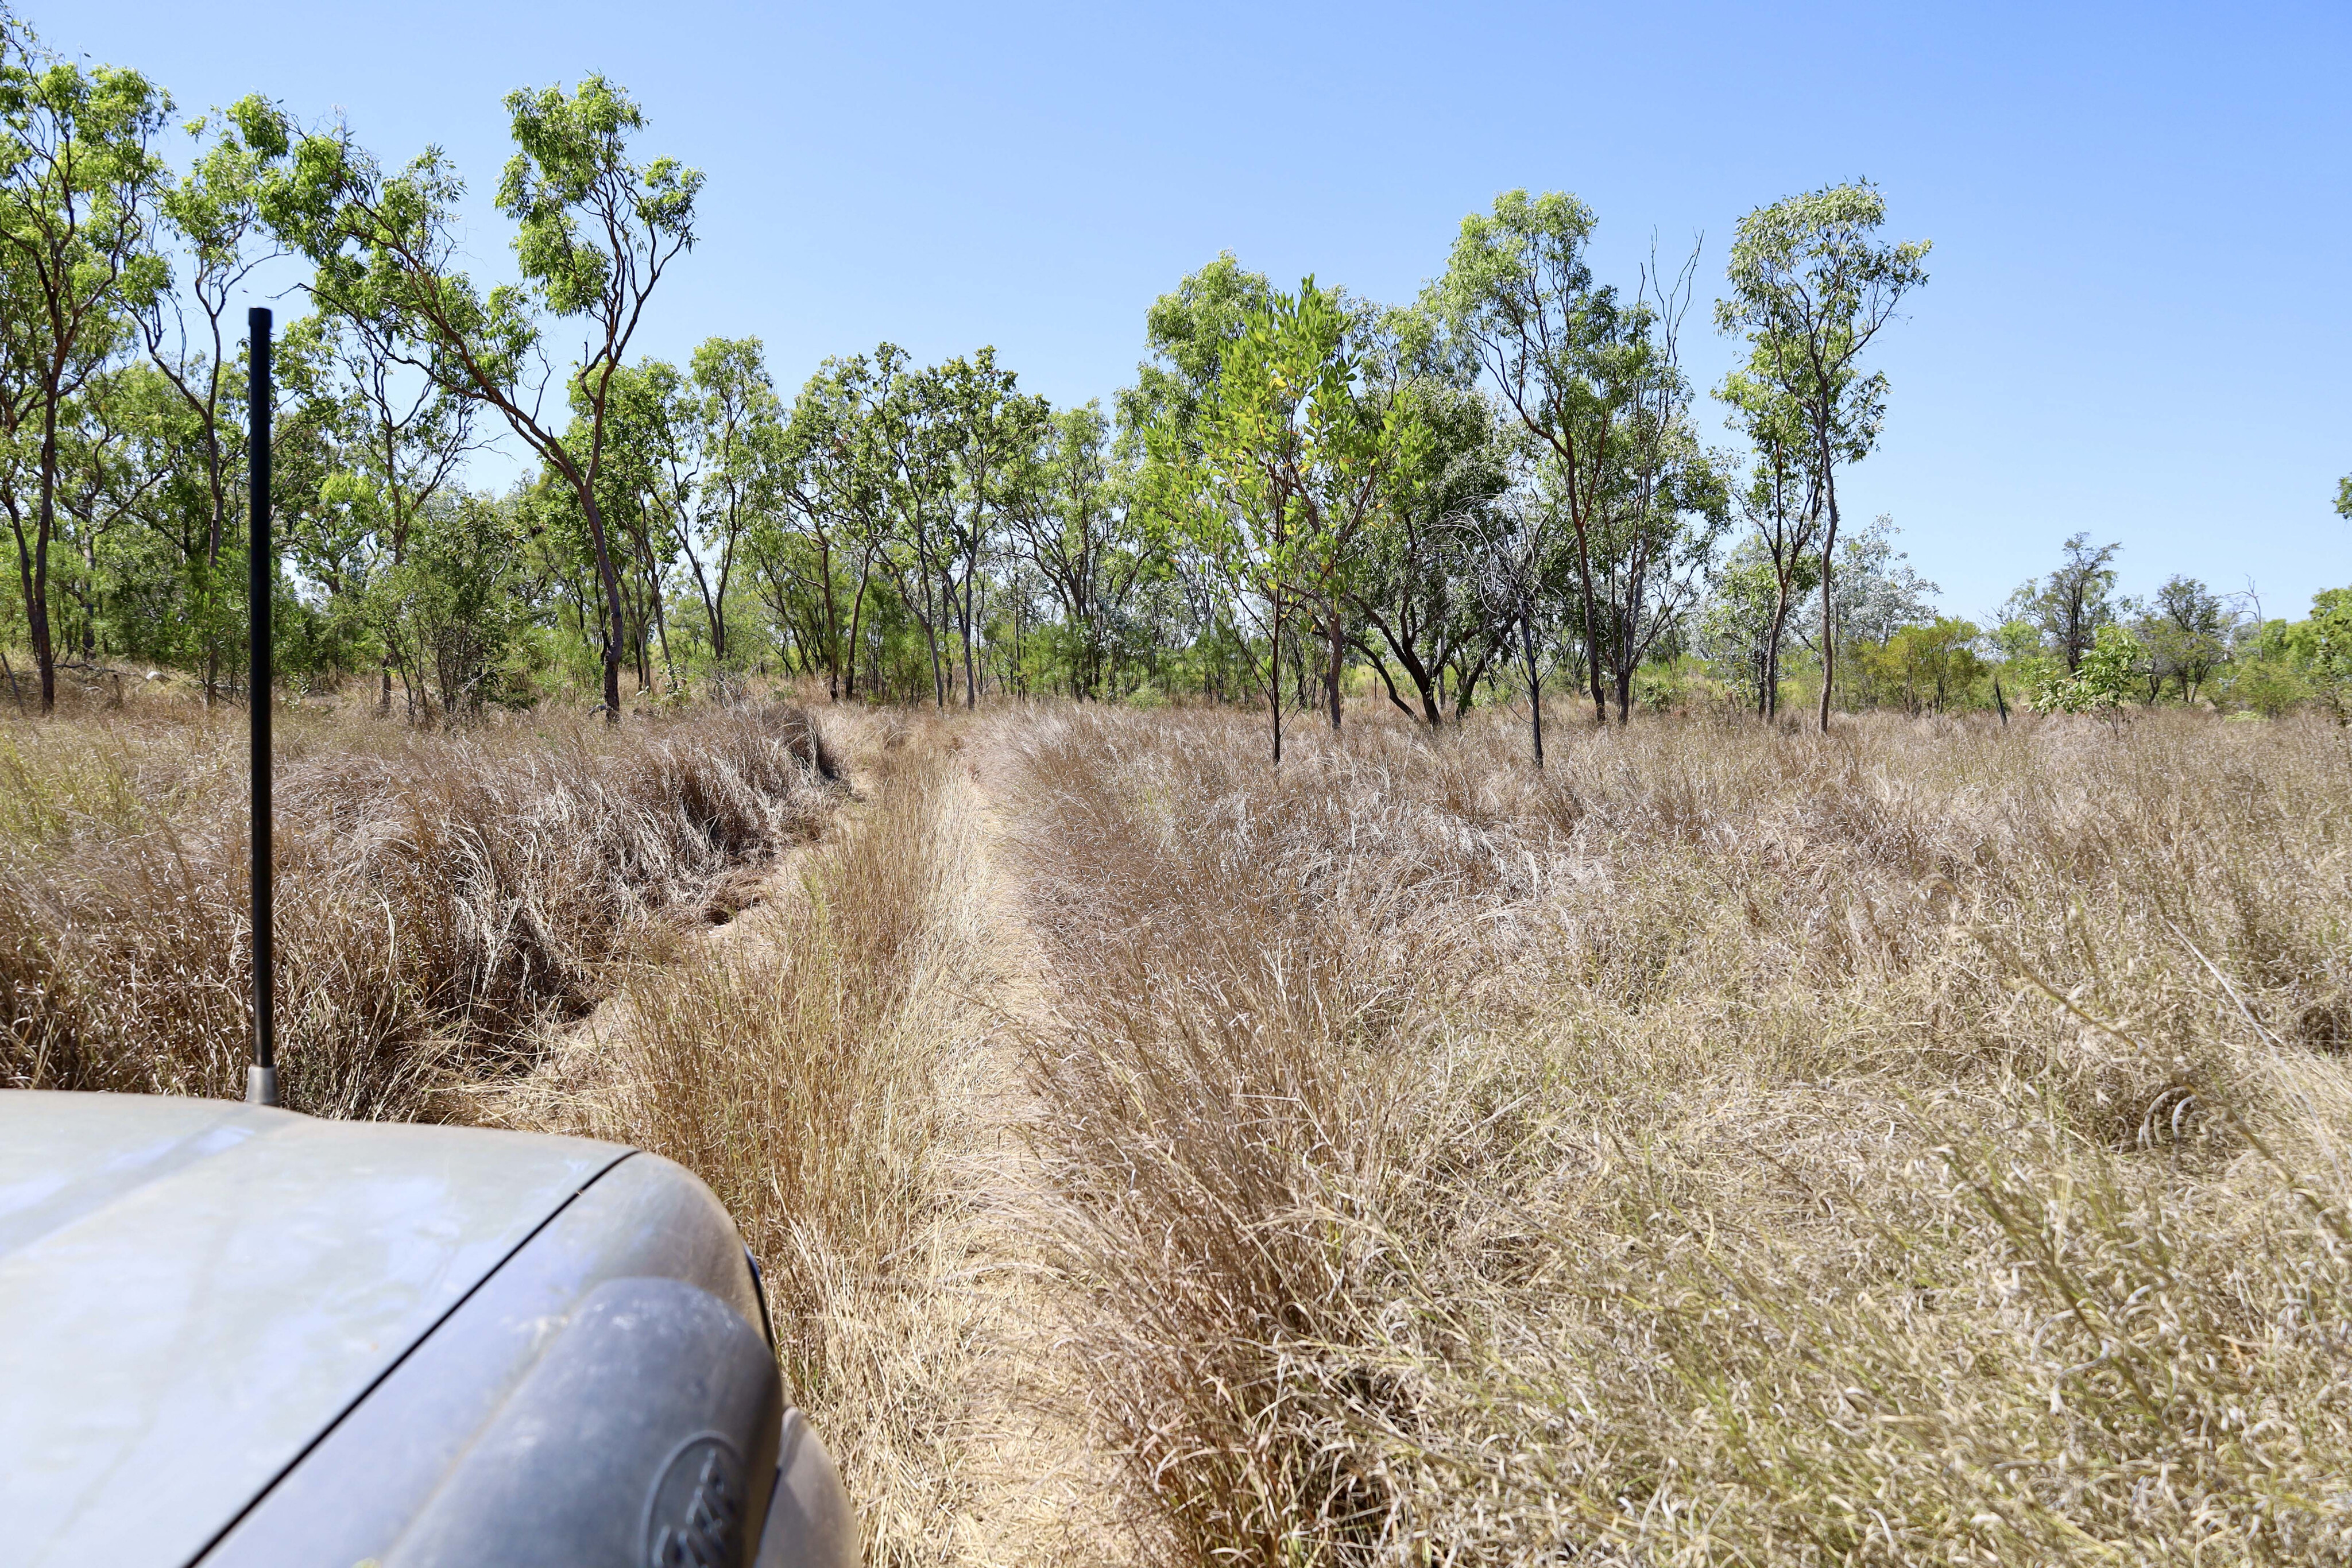 b66b1f7f/grassy broadarrow track 4x4 australia judbarra national park jpg